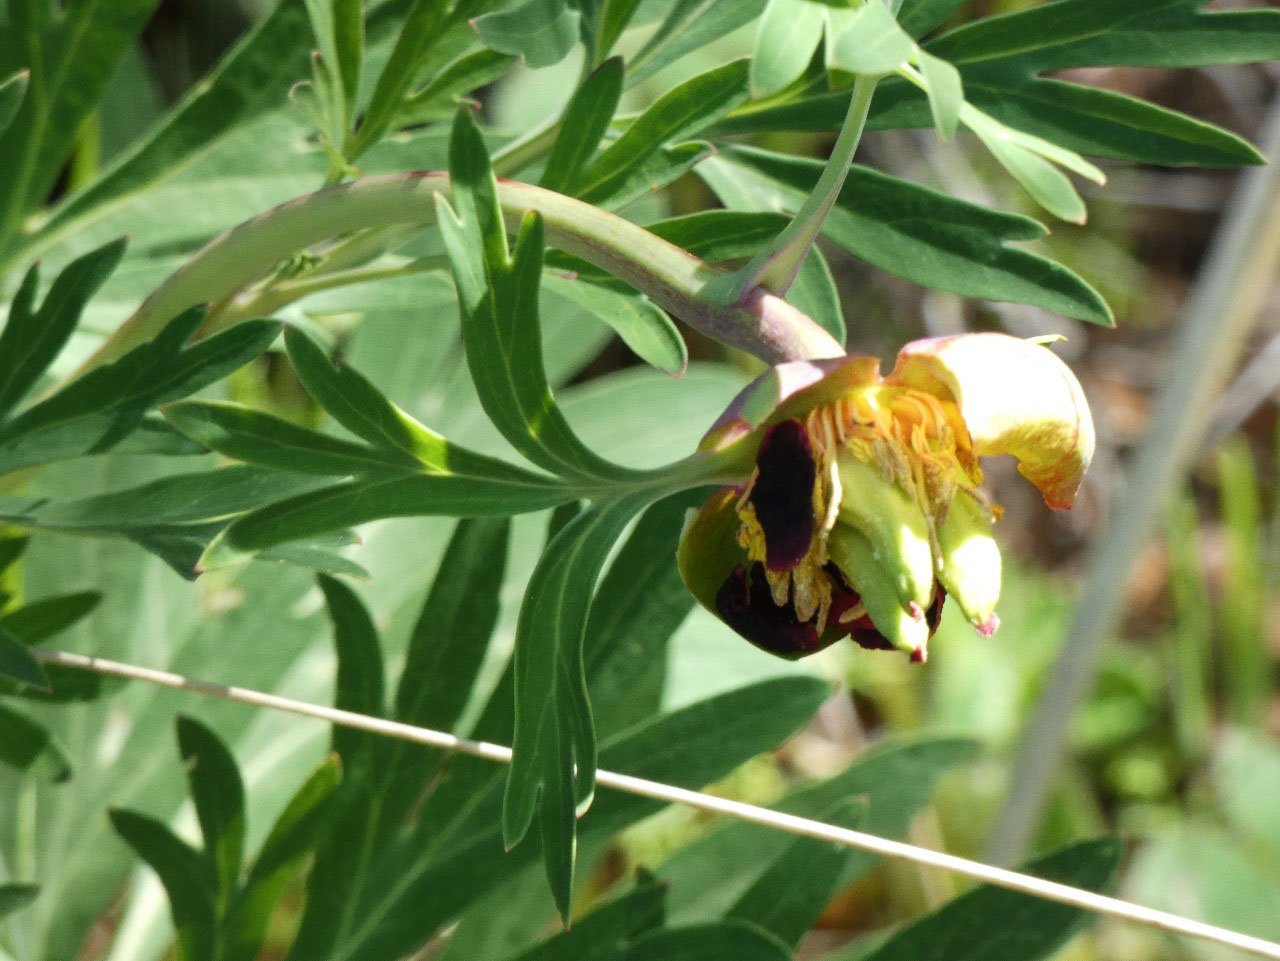 Closeup of a California peony flower